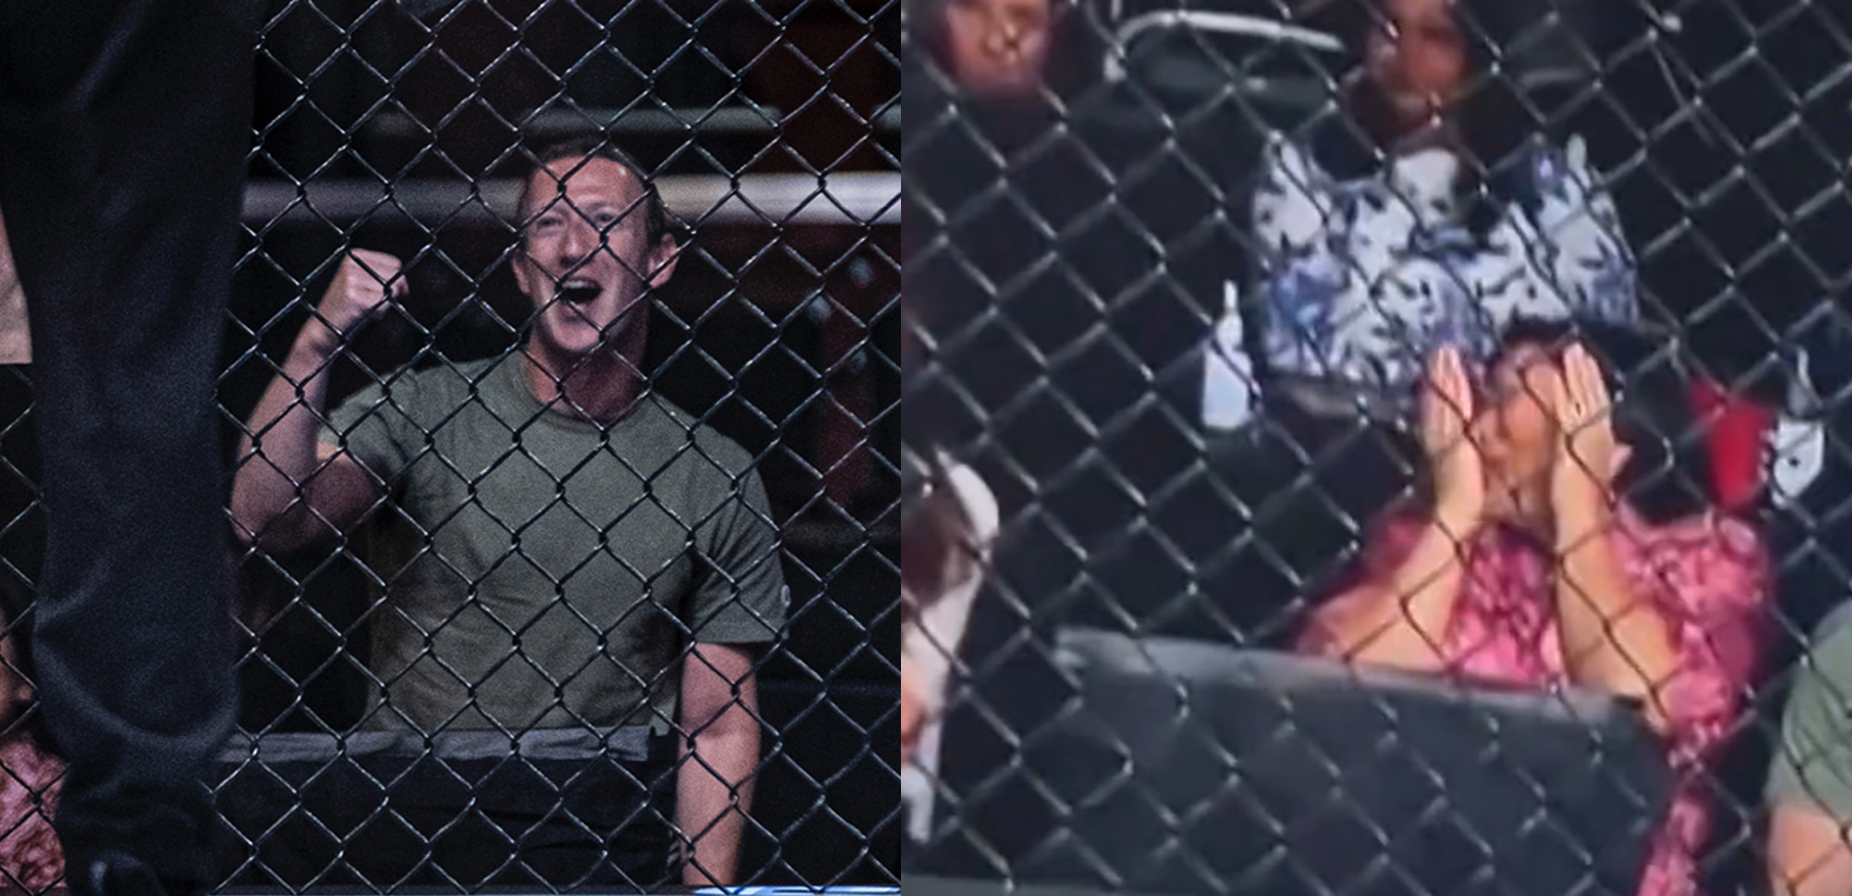 Zuckerberg disfrutó el combate al máximo, no tanto así su esposa Priscilla Chan. (Foto Prensa Libre: Redes Sociales)